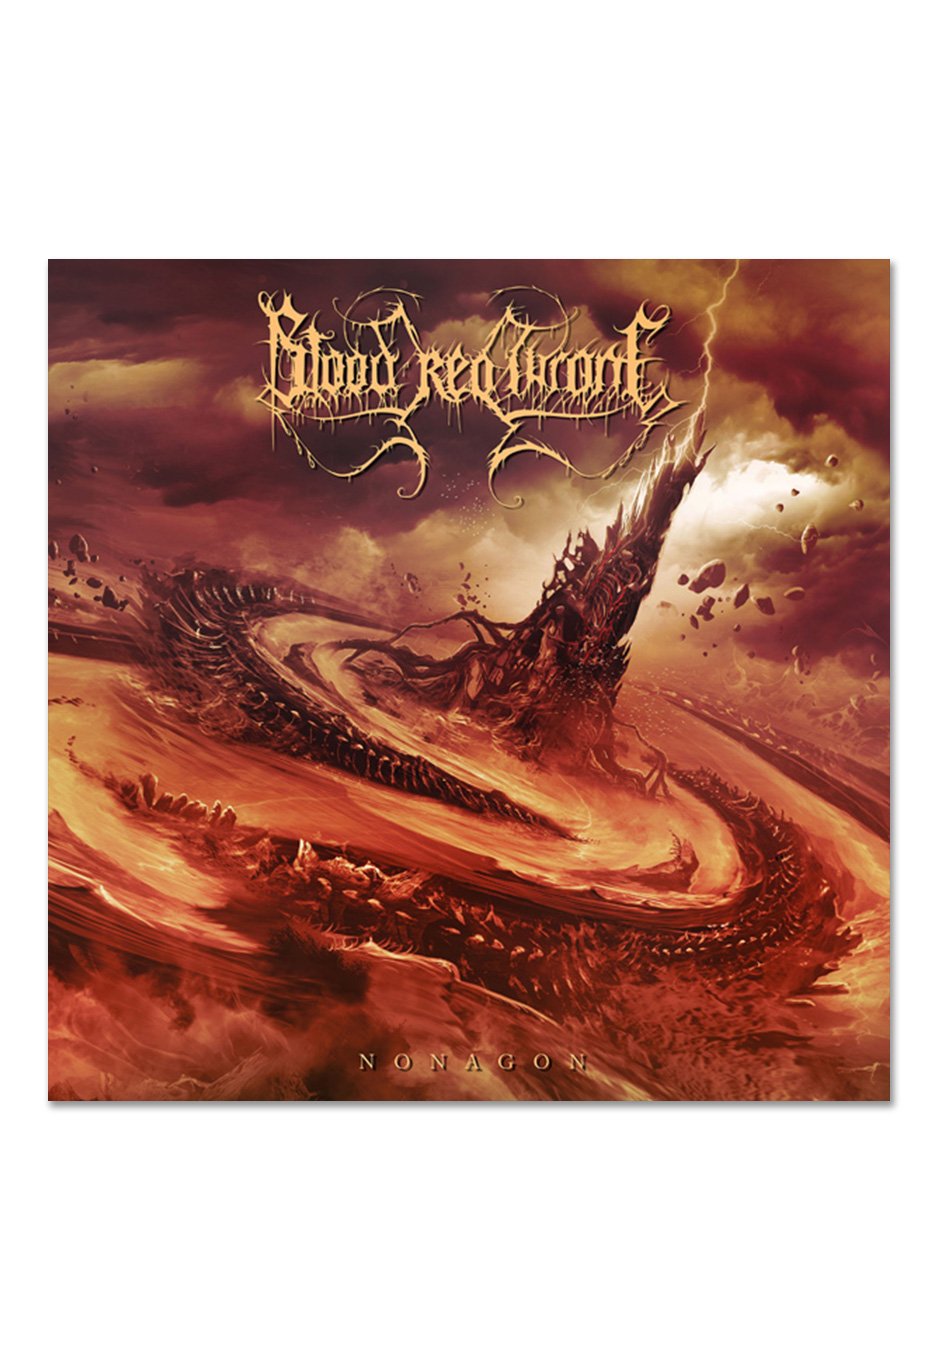 Blood Red Throne - Nonagon - Vinyl